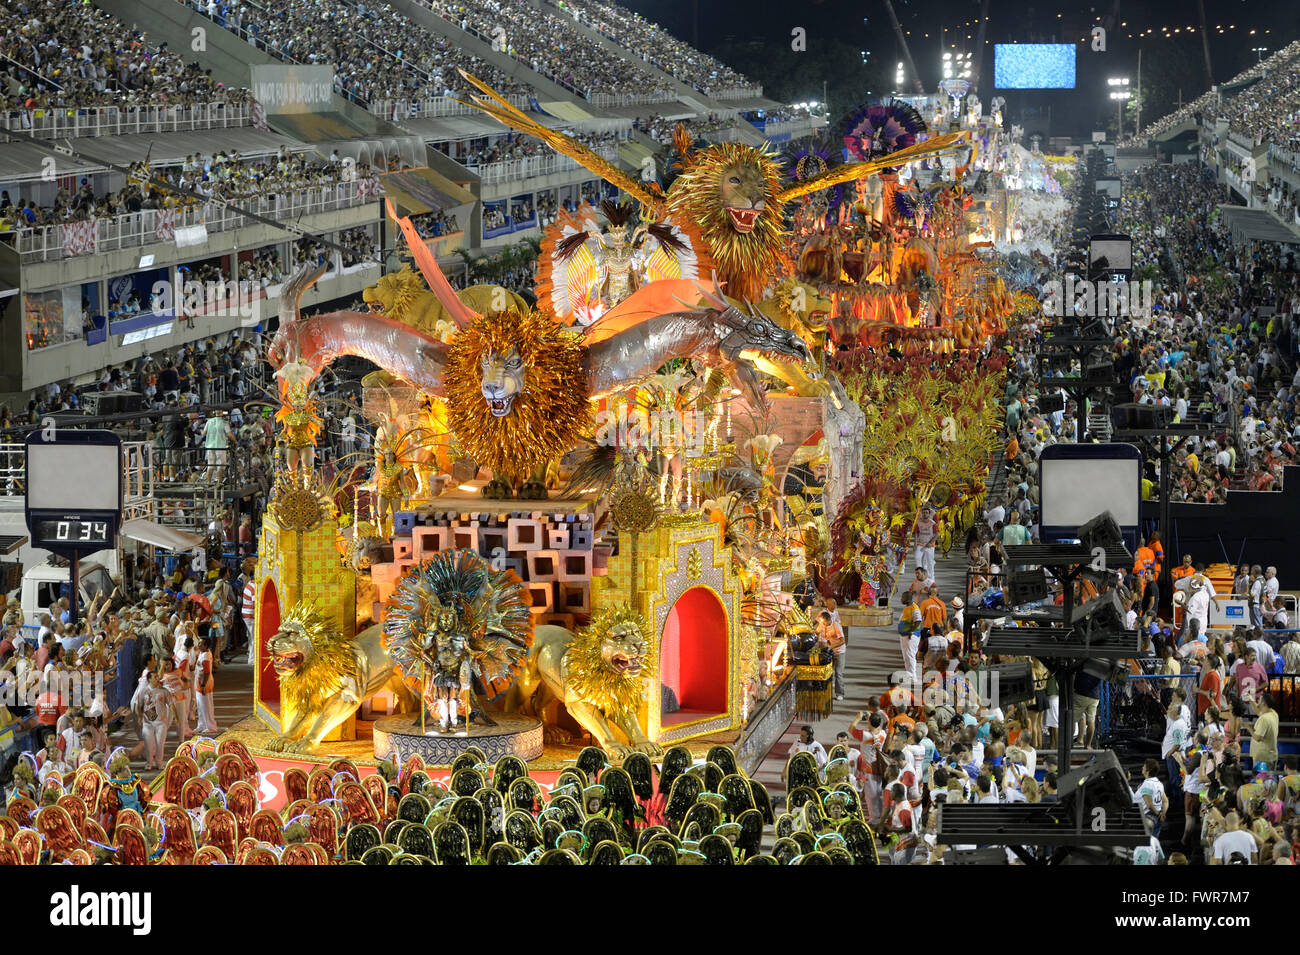 Parade of the Estacio de Sá samba school with allegories float through the Sambodromo Carnival 2016 Rio de Janeiro, Brazil Stock Photo